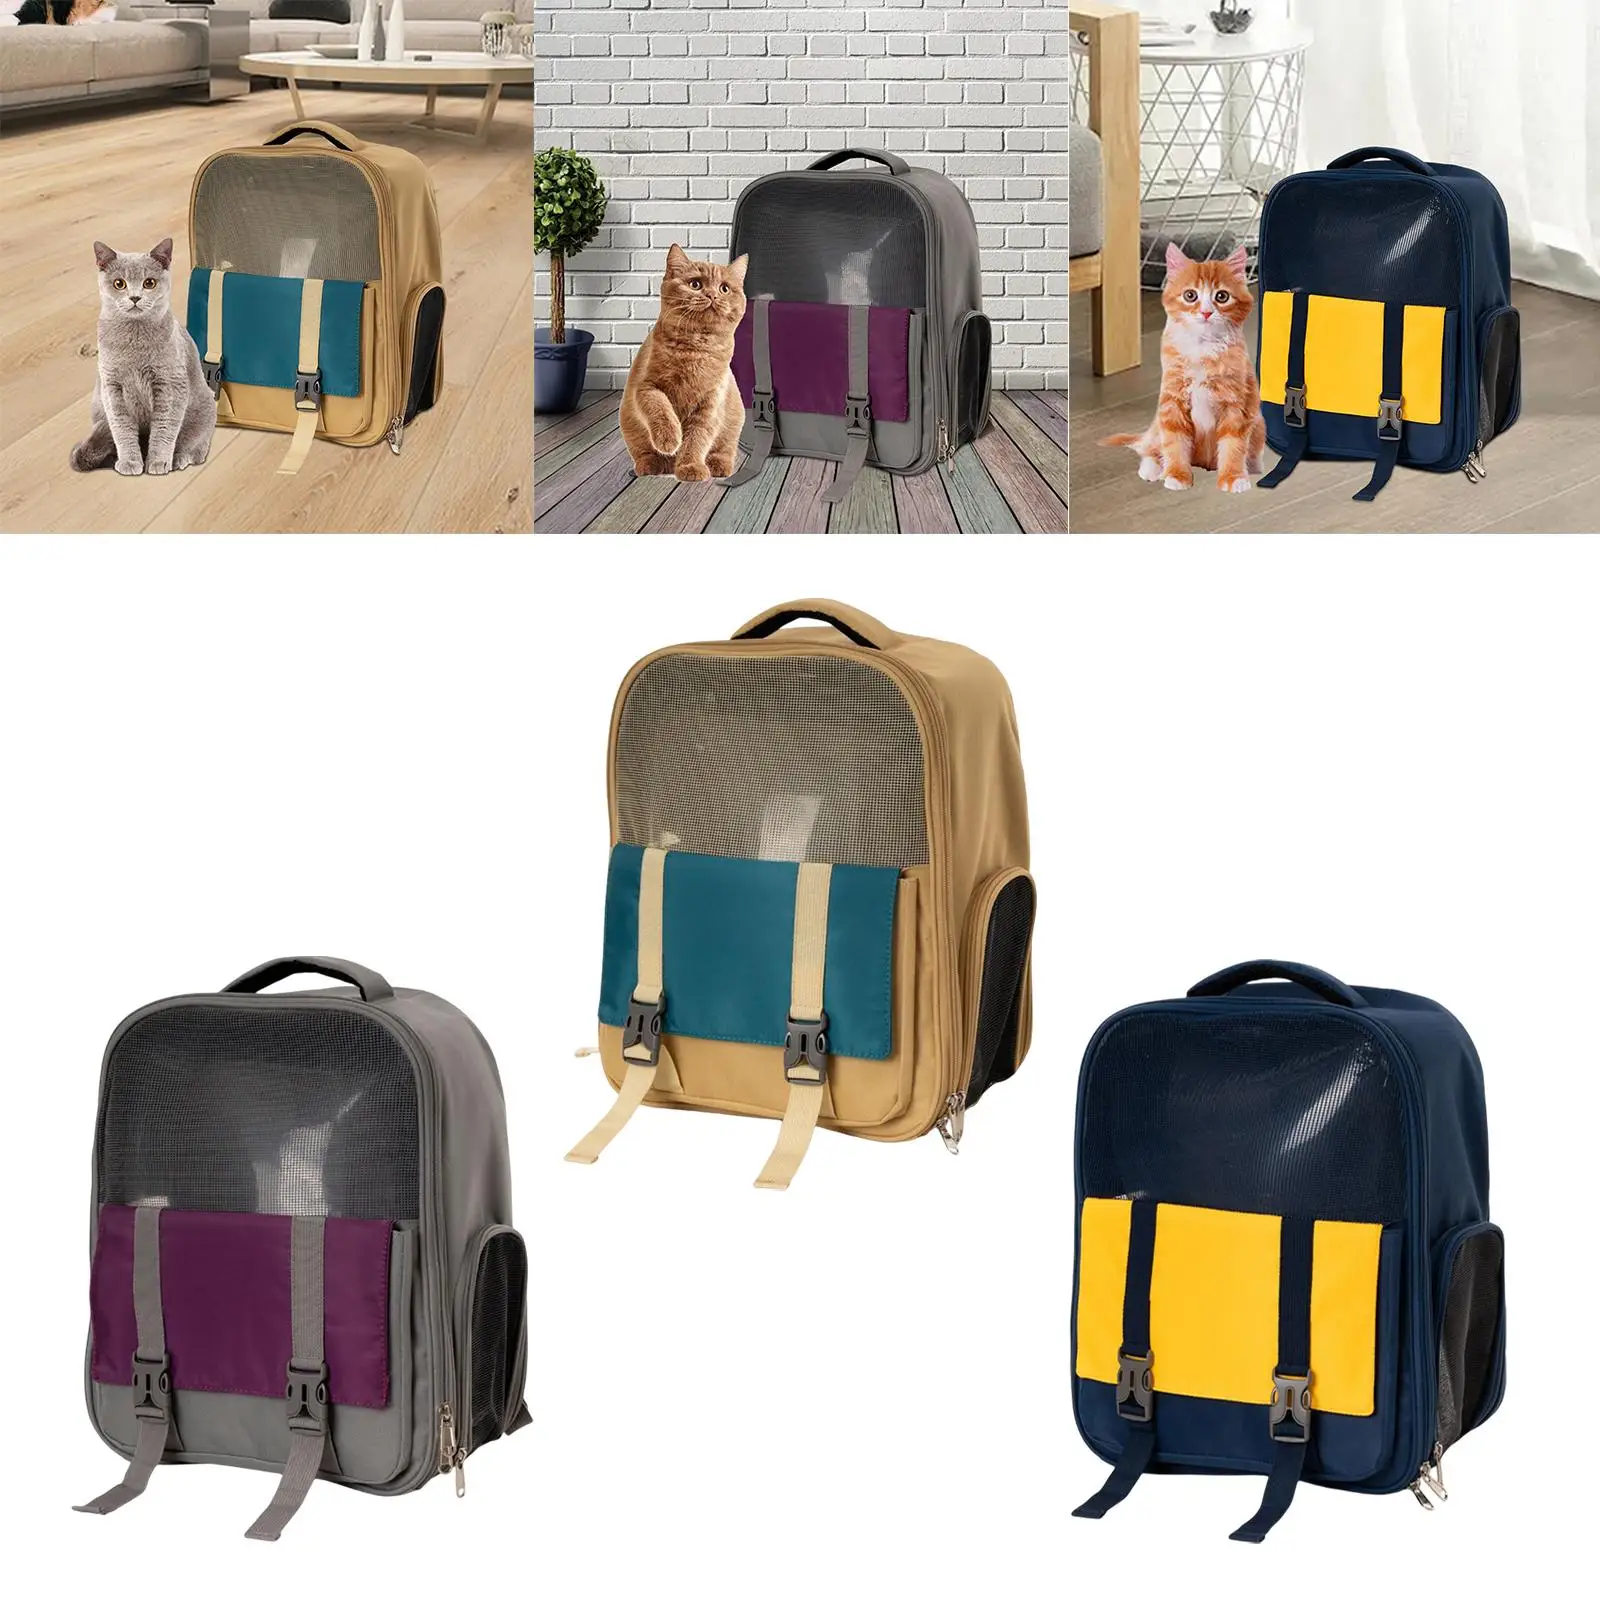 Cat Carrier Backpack Dog Travel Bag Carrying Bag Adjustable Shoulder Strap Ventilated Pet Backpack for Kitten